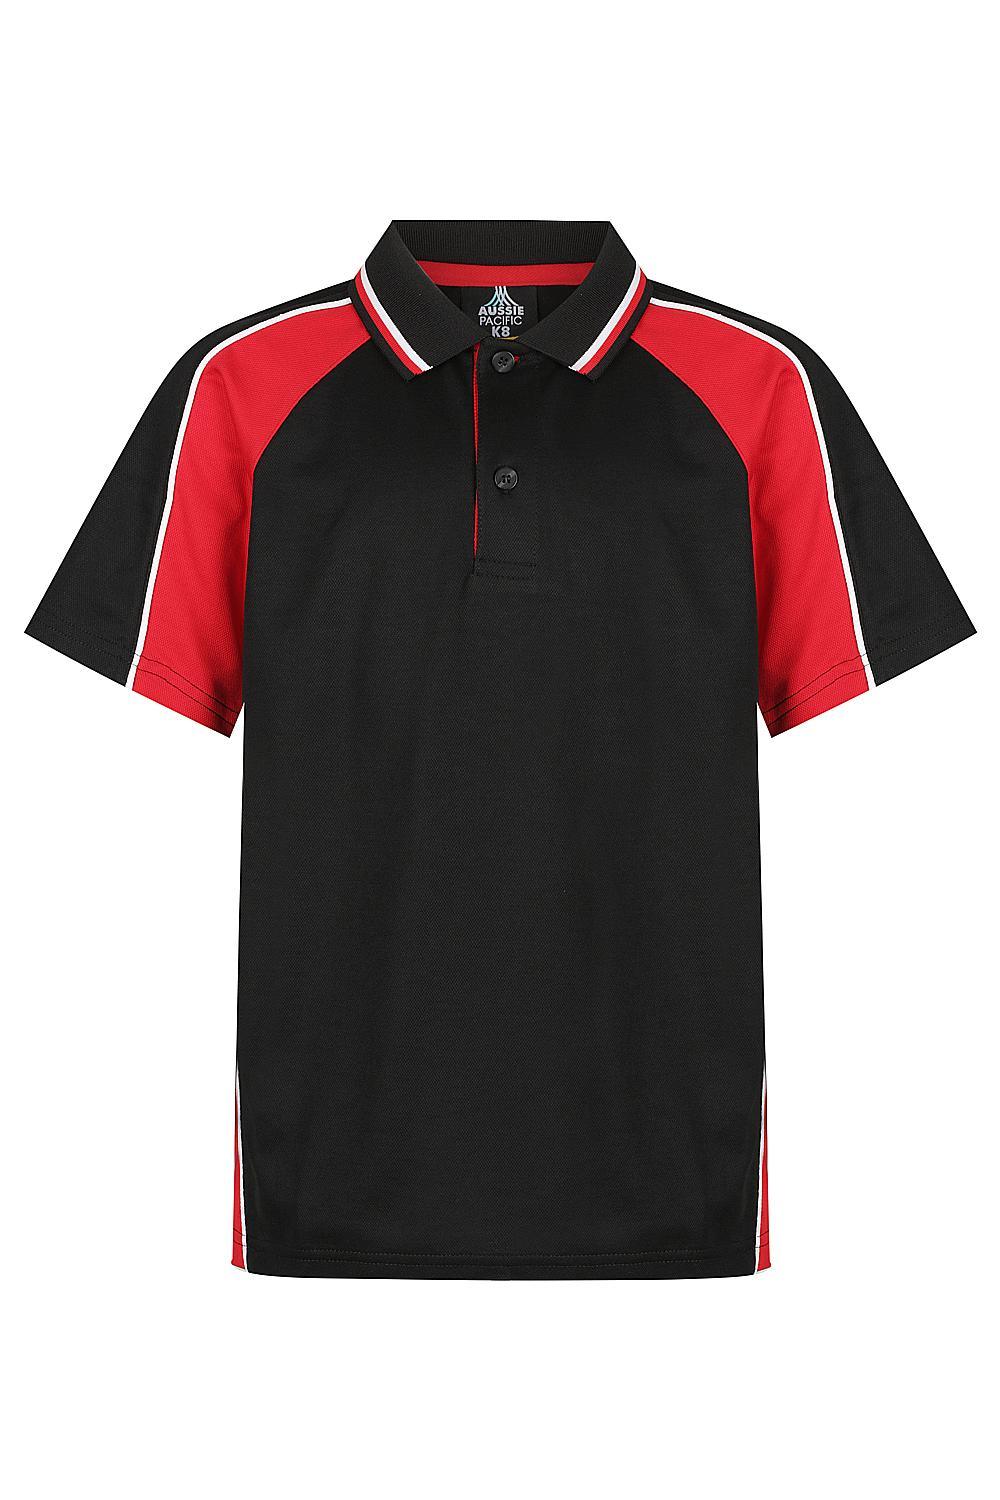 Custom Panorama Kids Shirt - Black/Red/White